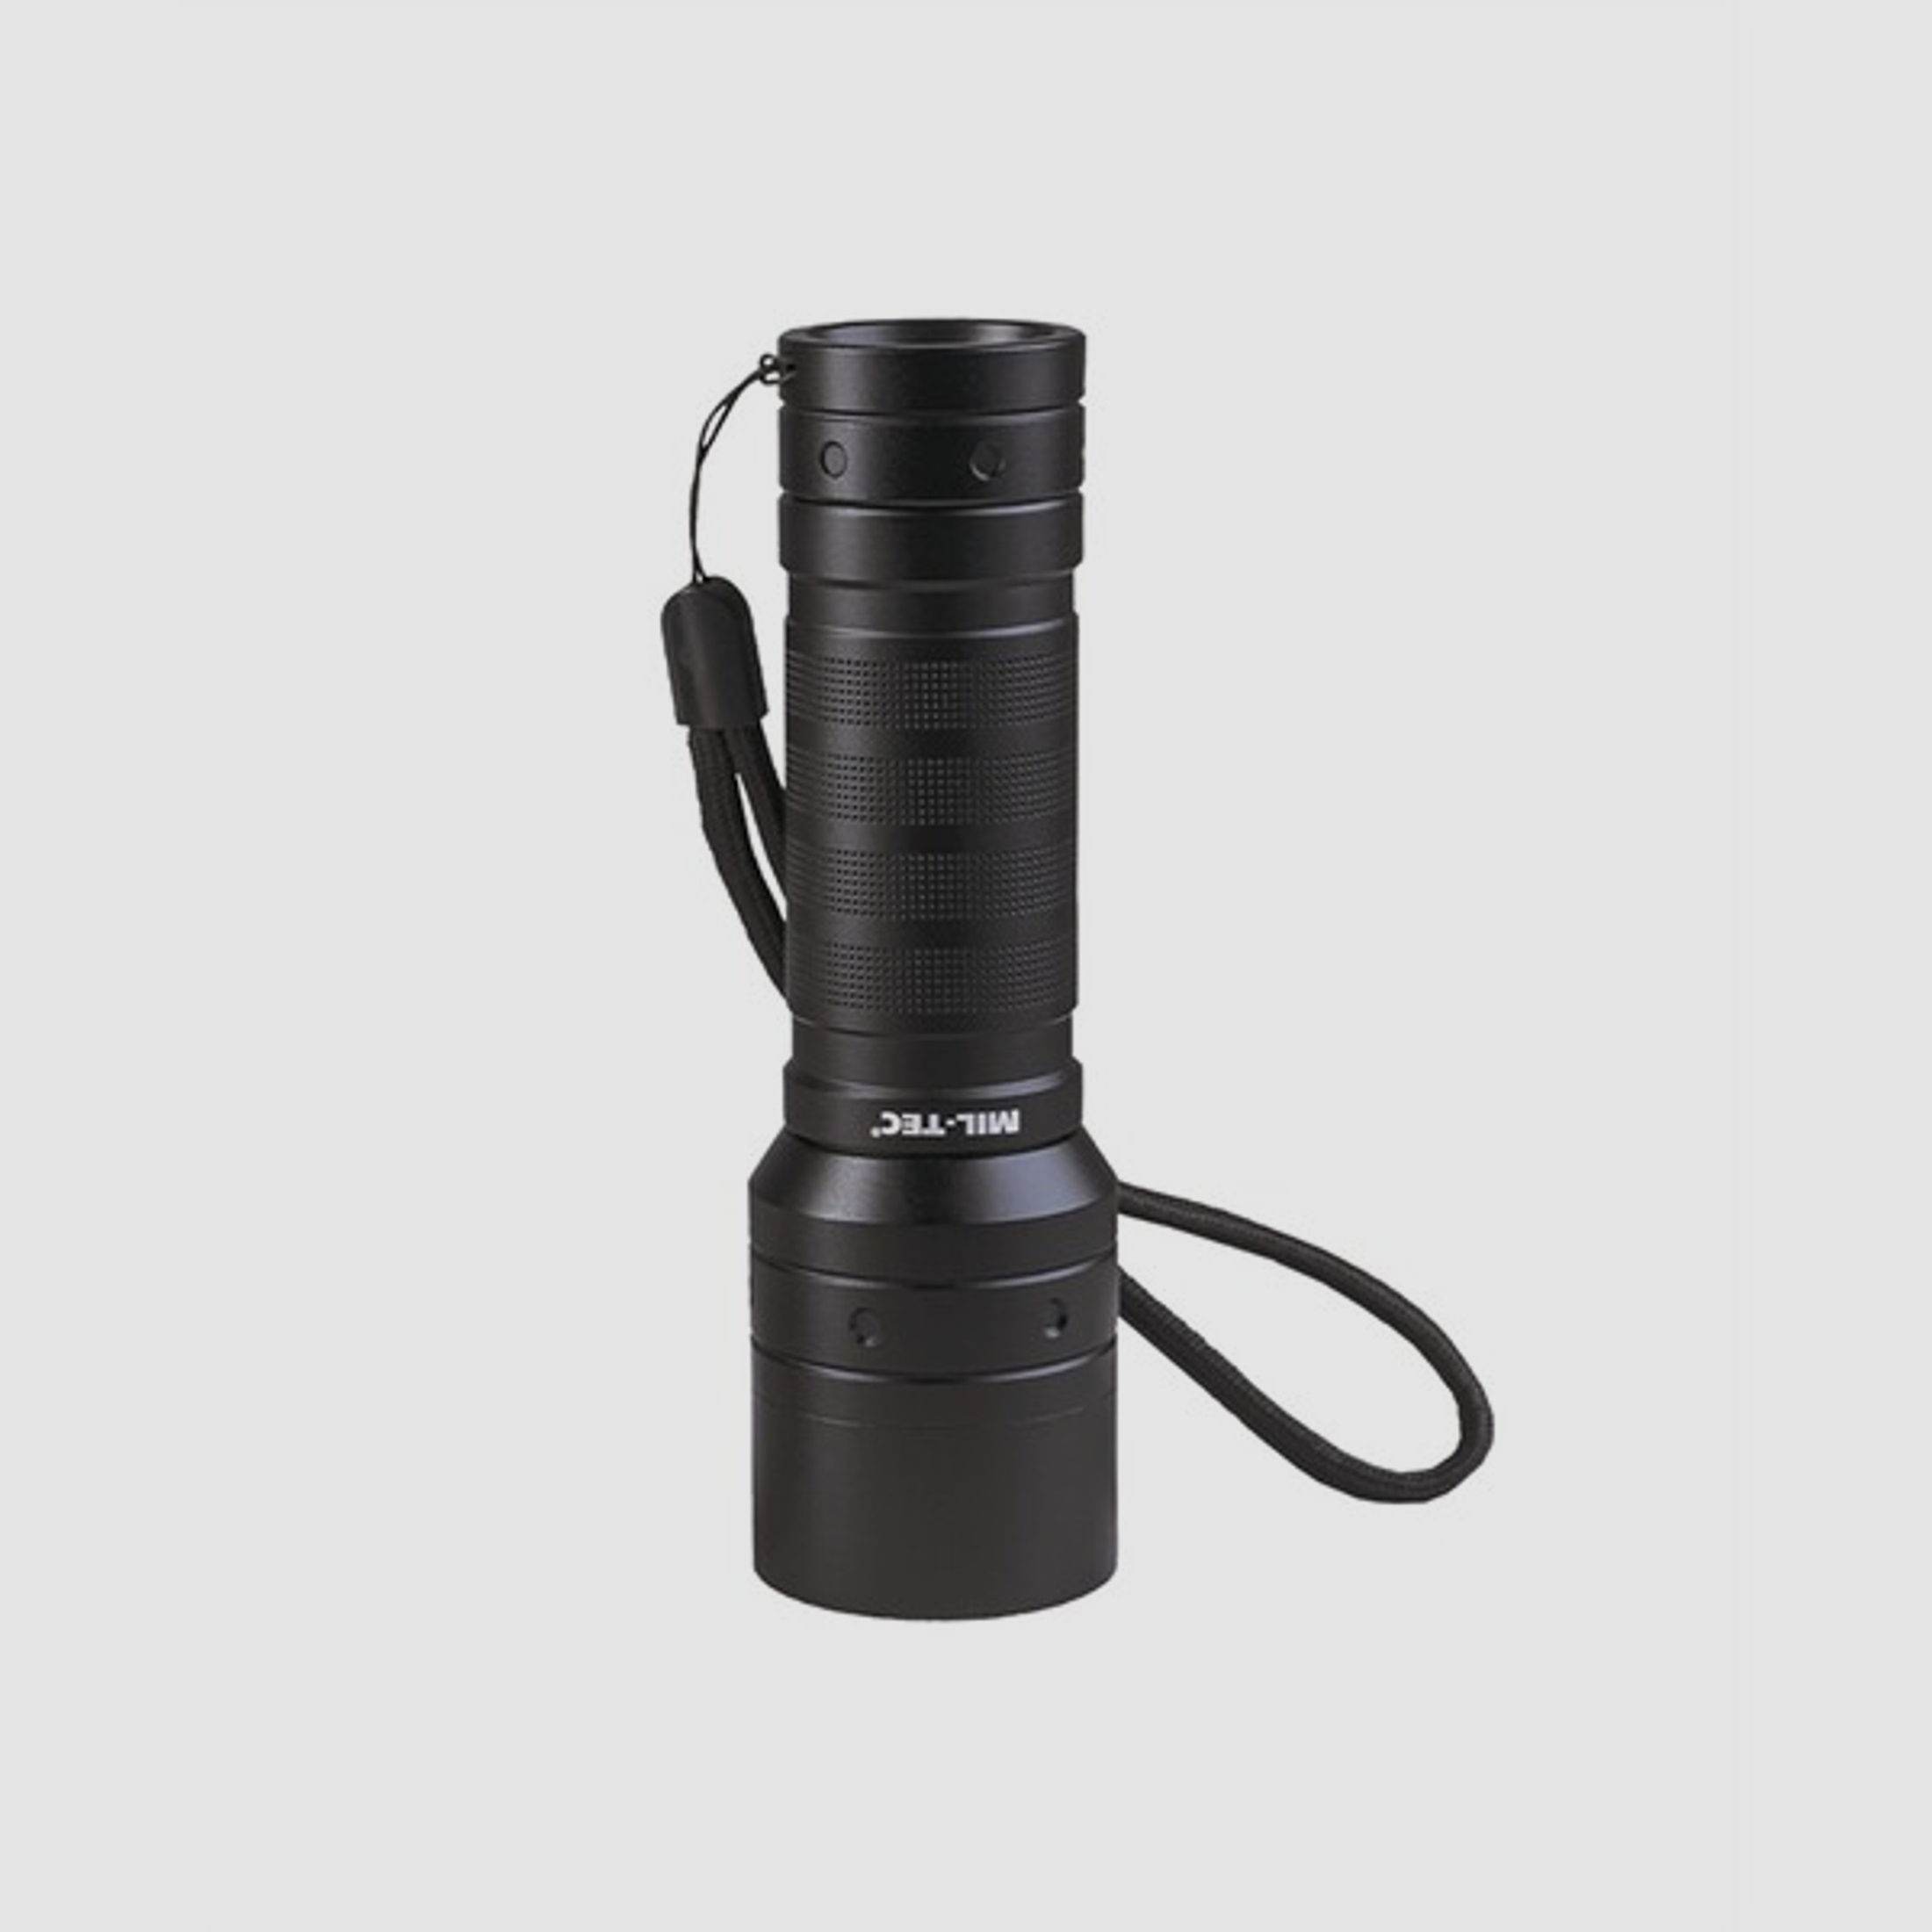 Stablampe MISSION - Taschenlampe - 520 Lumen mit 3 Helligkeitsstufen + Stroboskopblitz